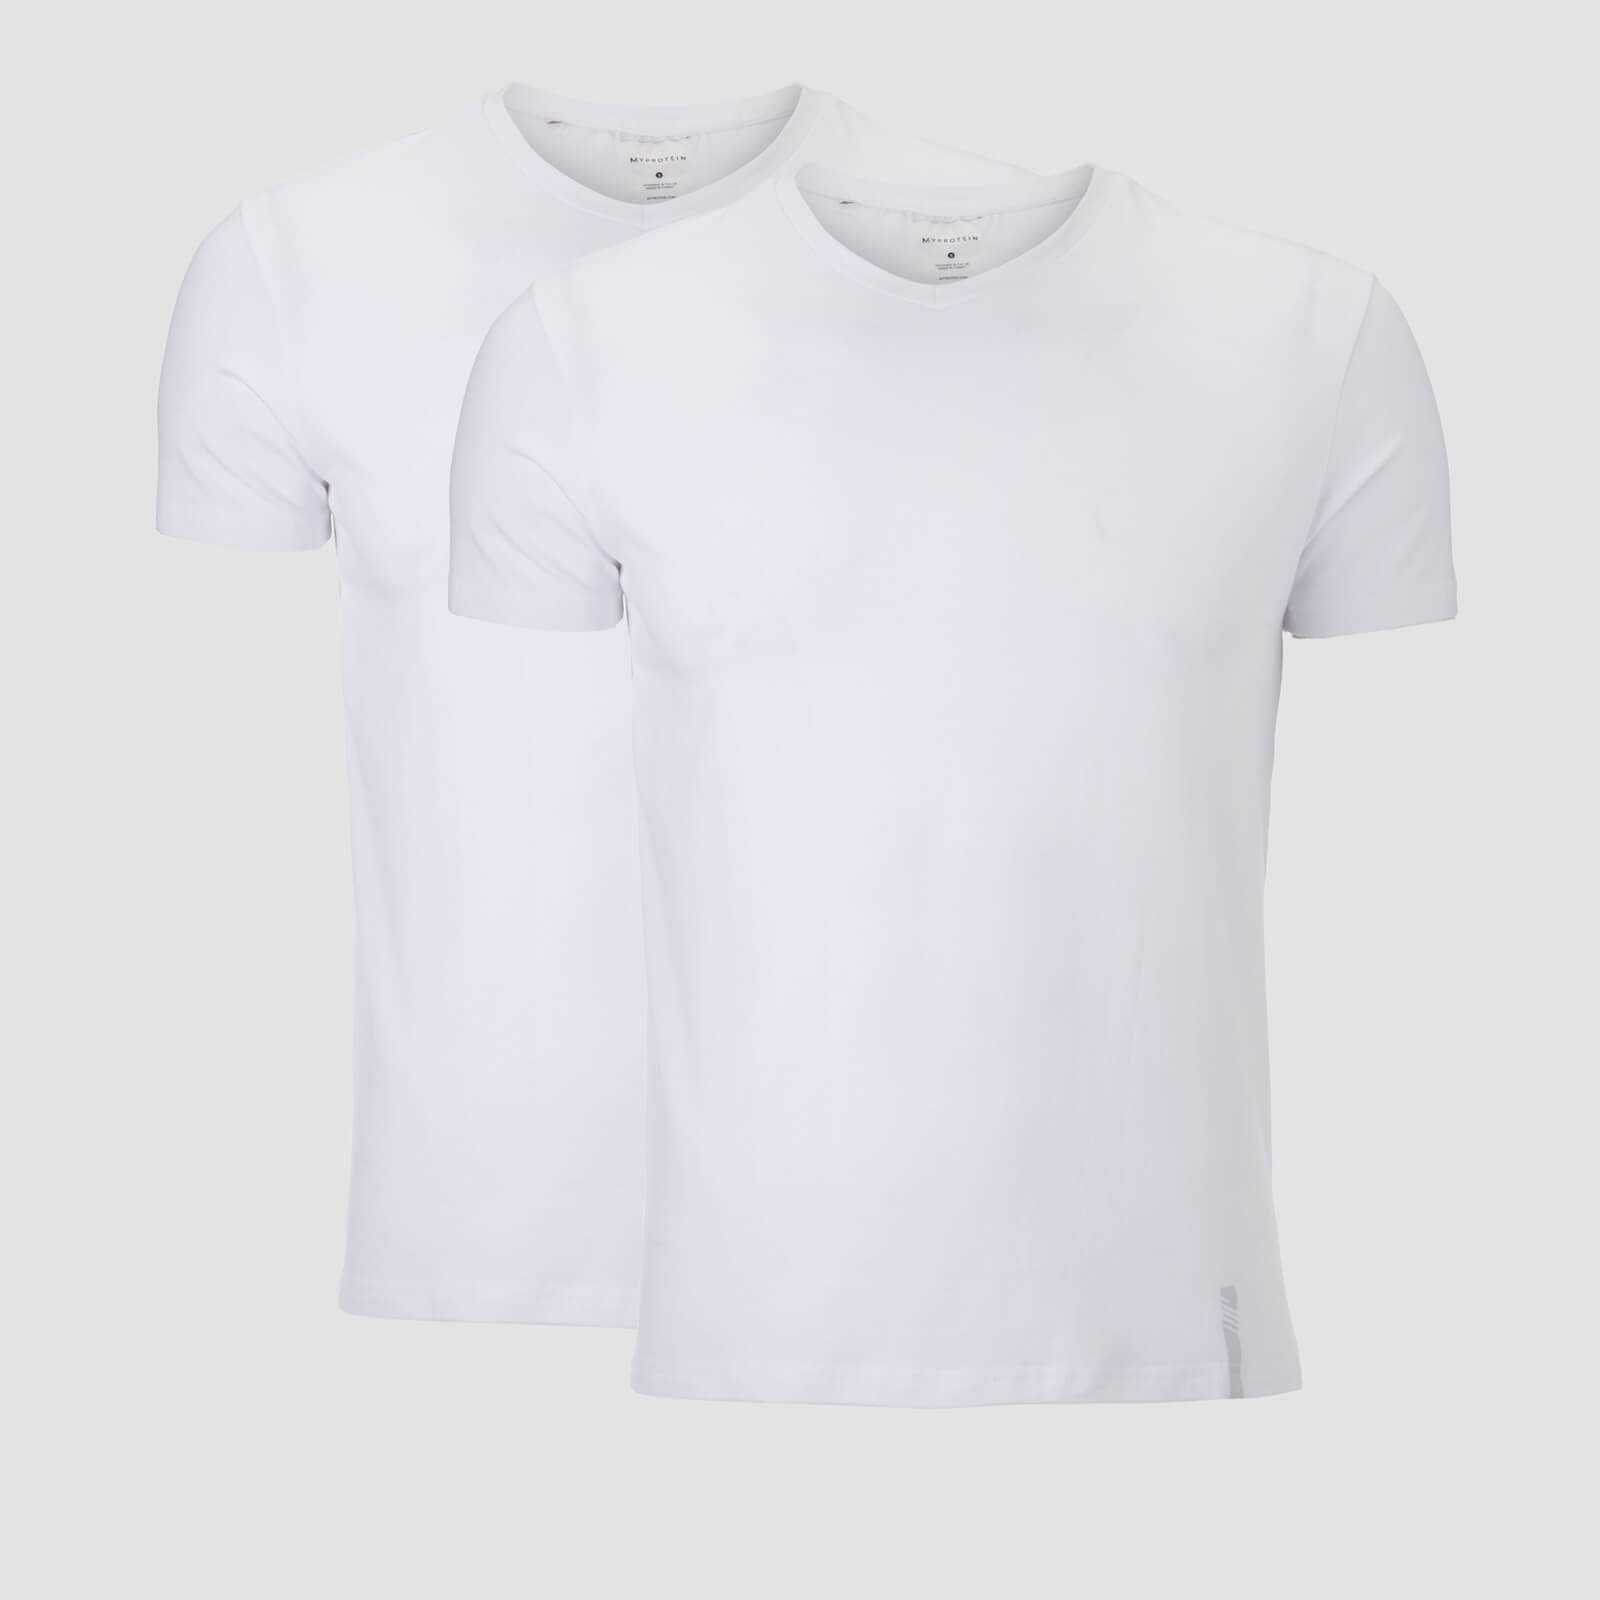 T-shirt Clássica com Decote em V Luxe para Homem da MP - Branco/Branco (Conj. de 2)